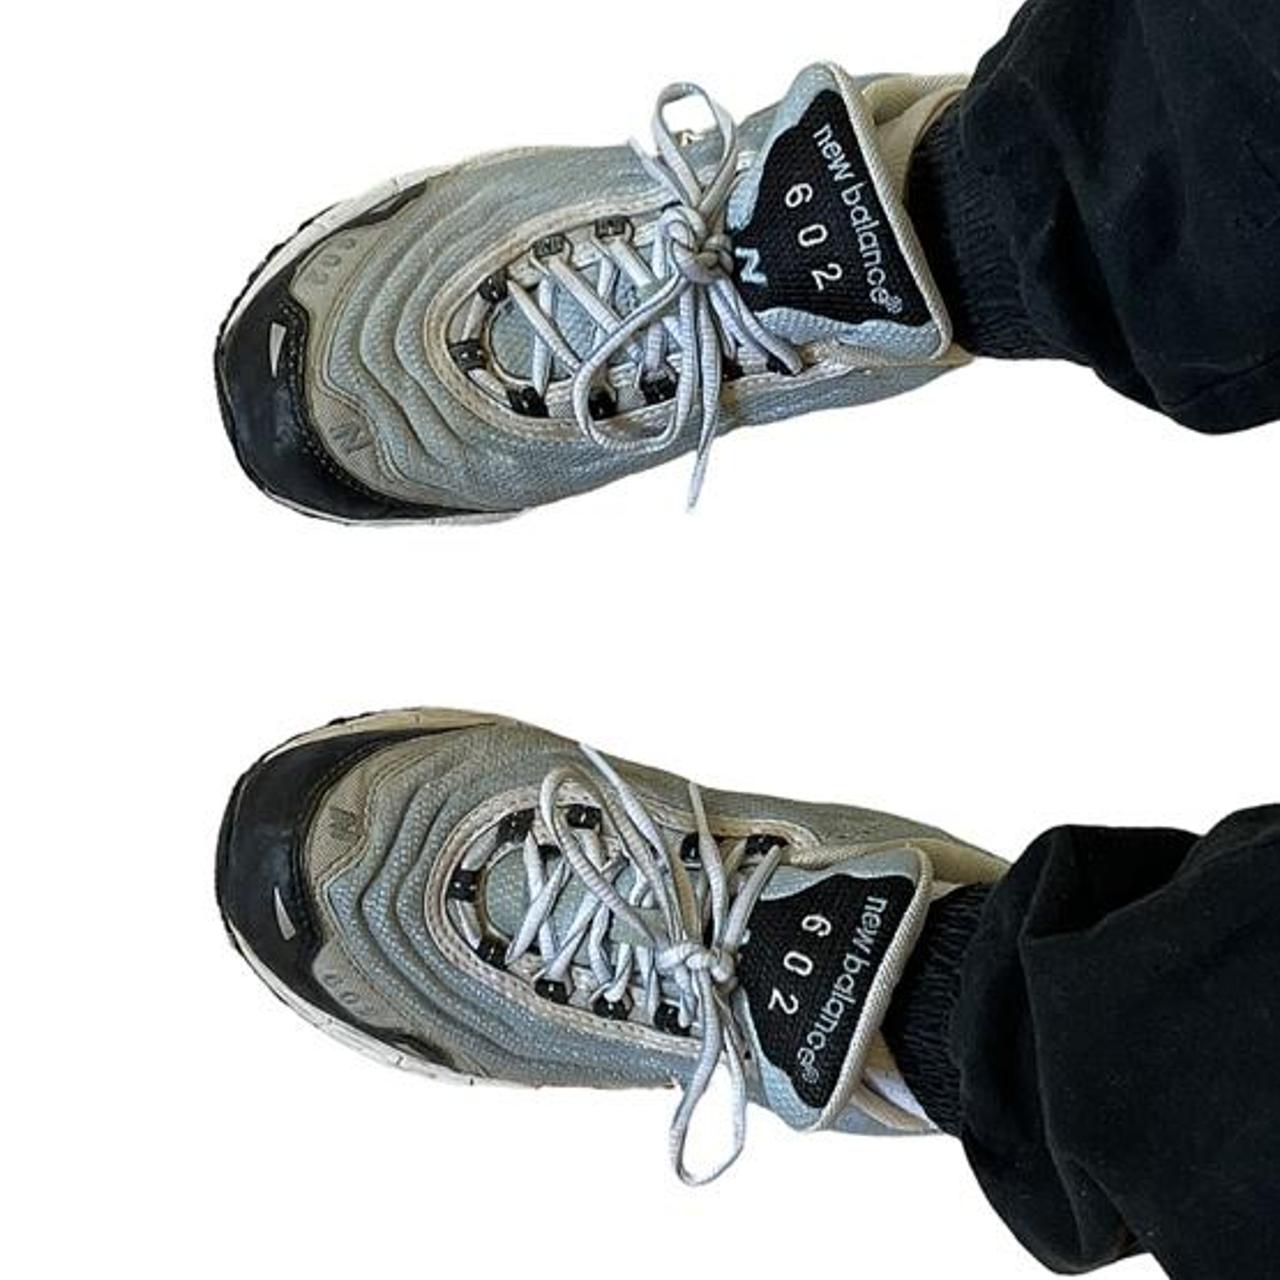 vitaliteit Caius eerlijk New Balance 602s vintage shoes. Women size 6.5... - Depop